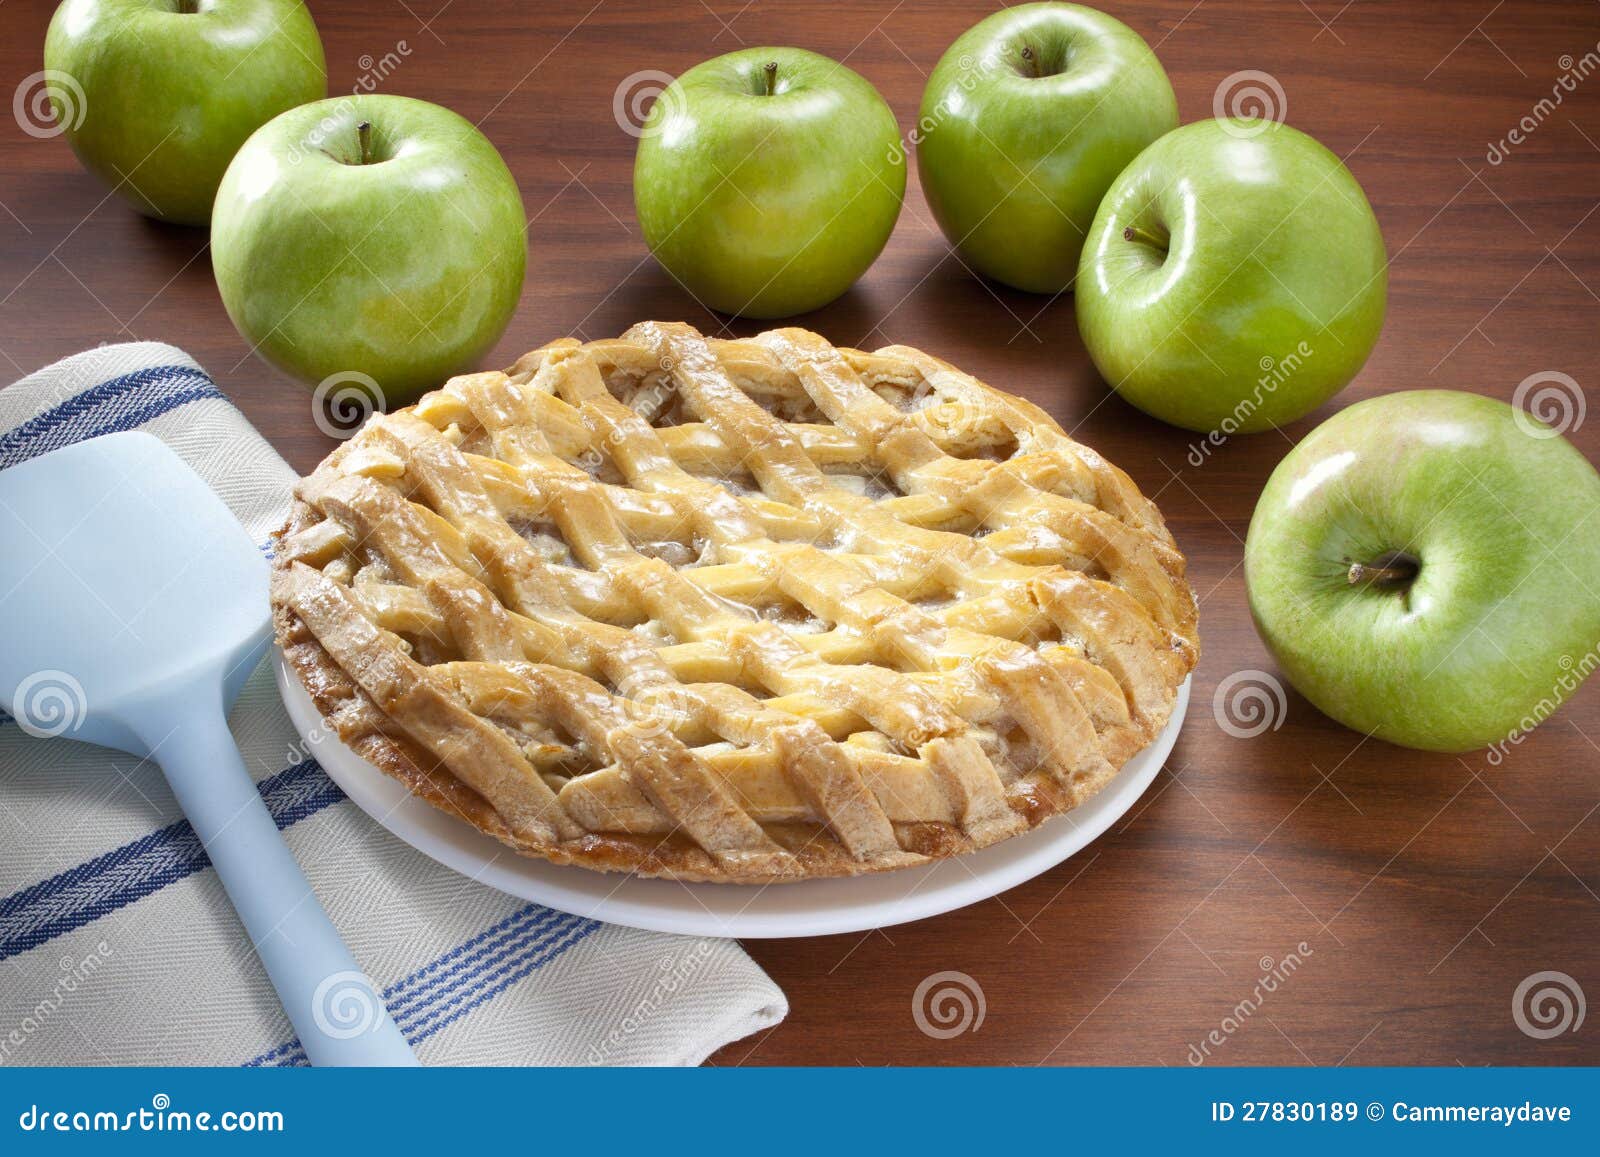 apple pie apples